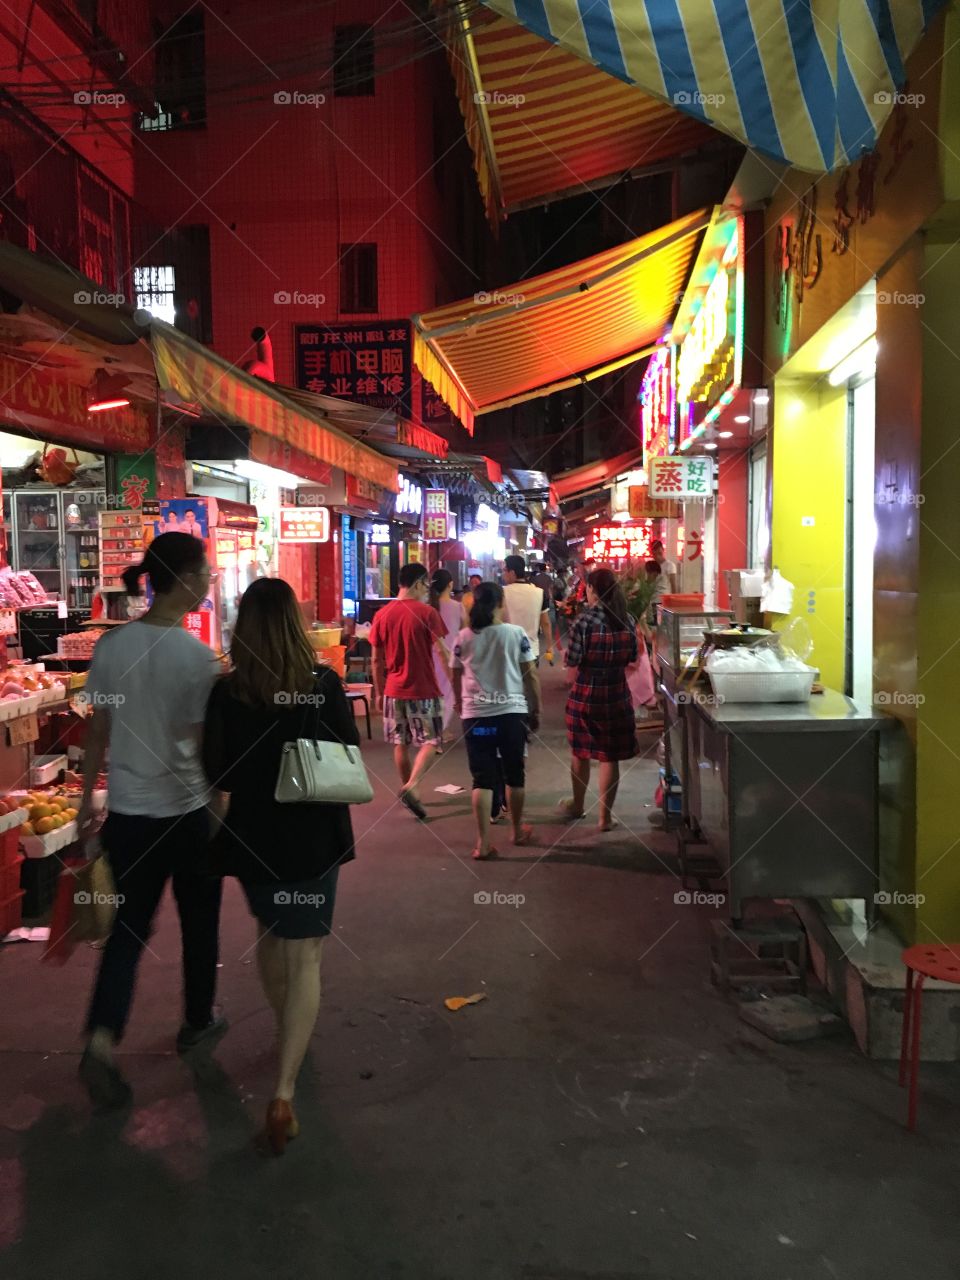 Chinese Back Street at Night - Shenzhen, China